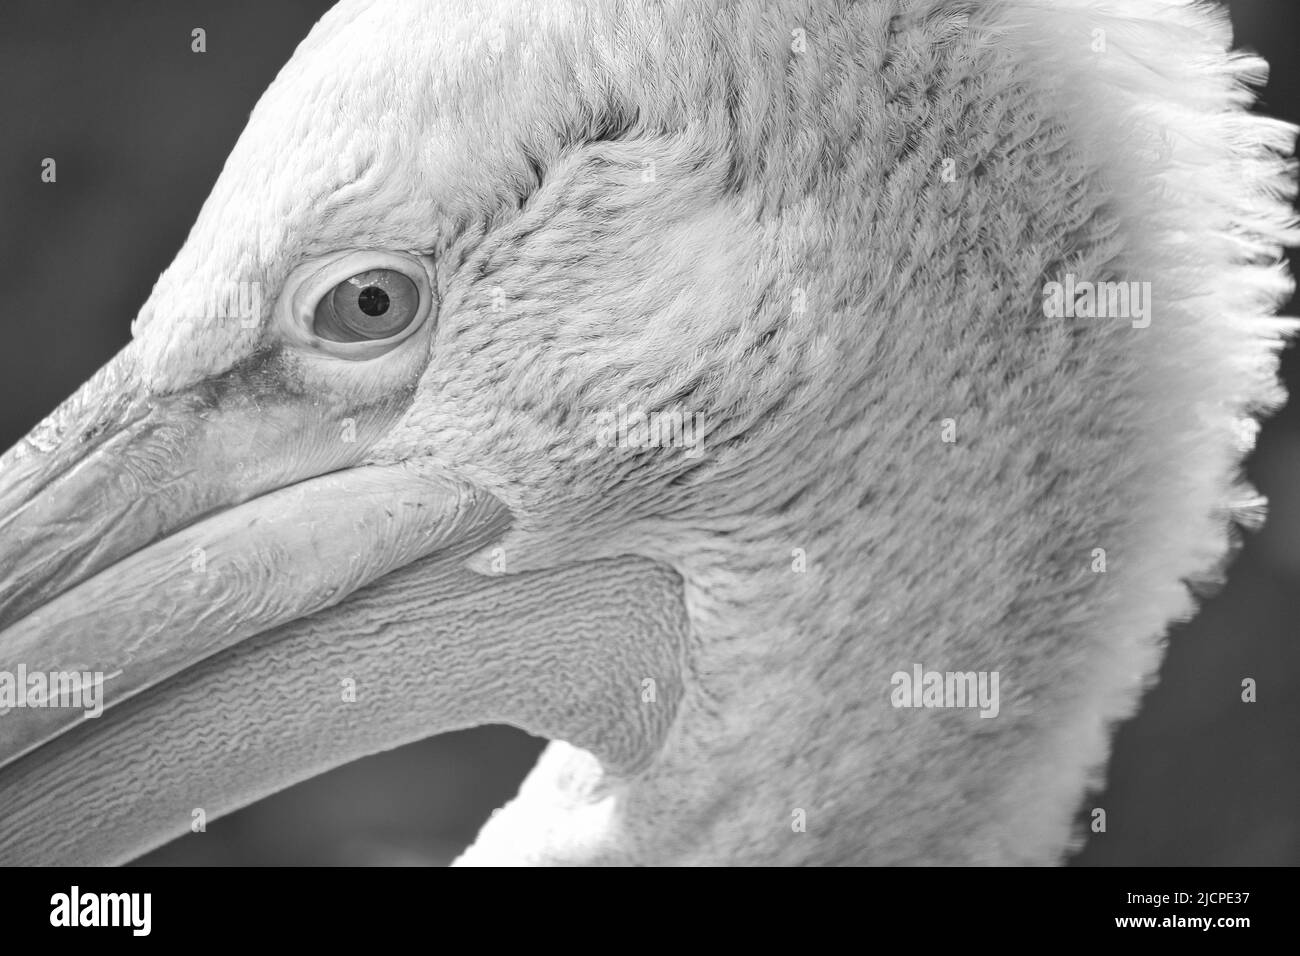 Pelican bianco e nero in ritratto. Piumaggio bianco, becco grande, in un grande uccello marino. Foto animale Foto Stock